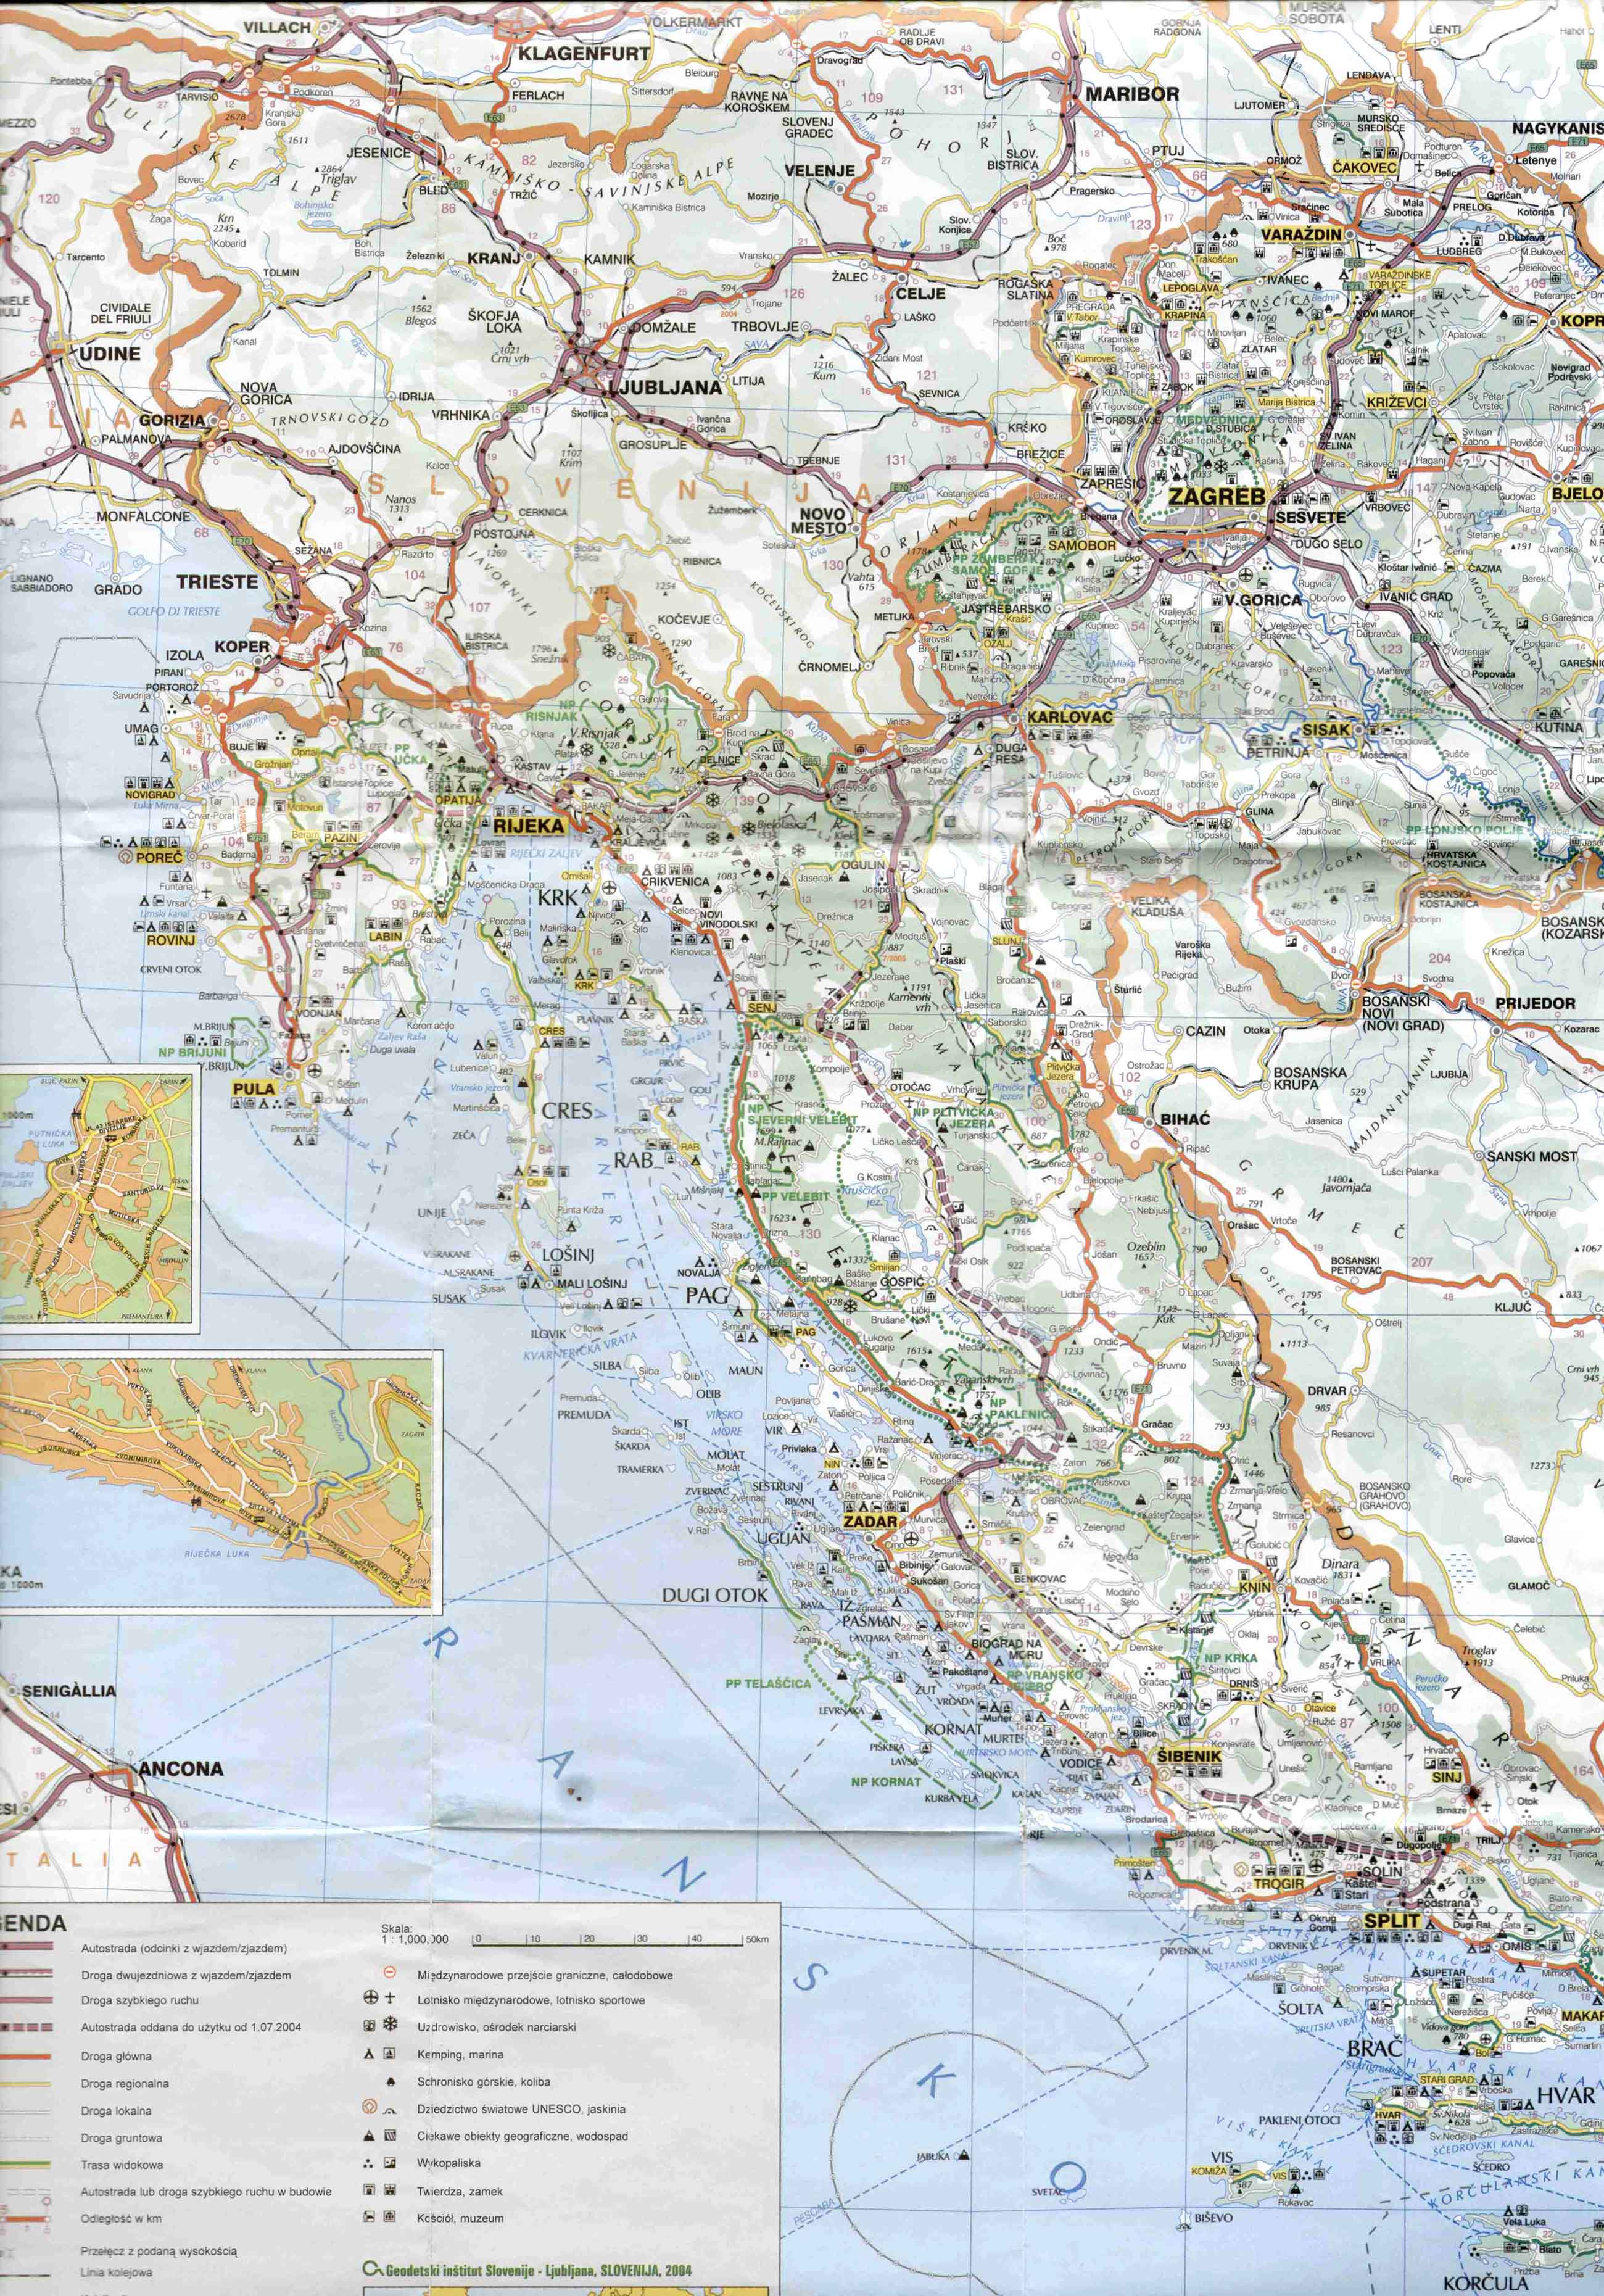 horvátország térkép részletes Új autópályaszakaszok és díjak Horvátországban 2004 horvátország térkép részletes